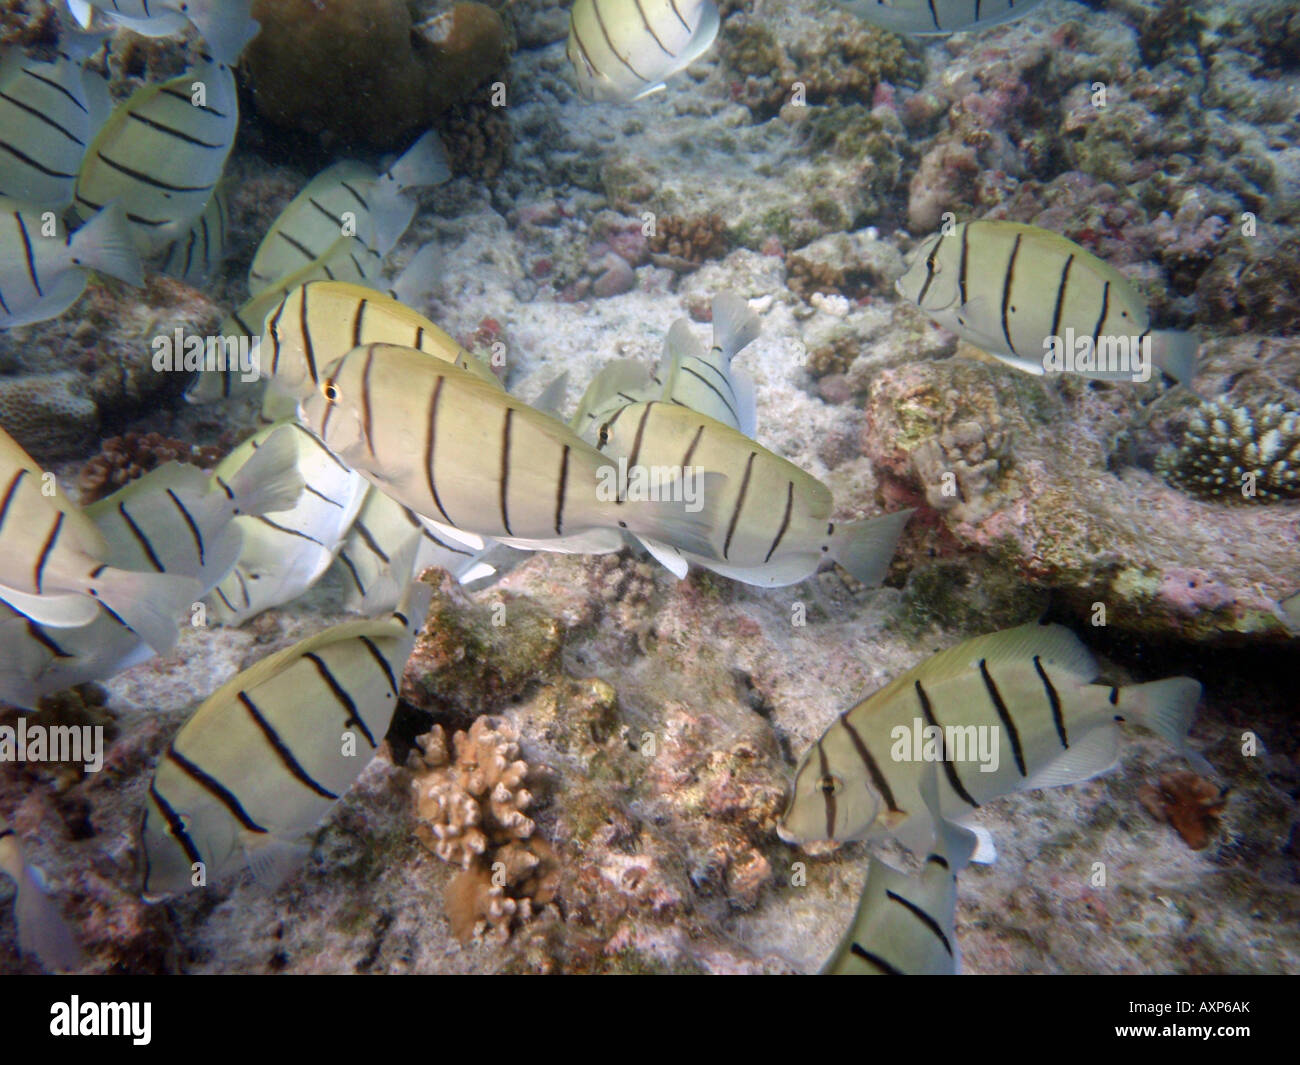 Doktorfisch (überführen Tang) zu überführen [Bandos Island Reef, Kaafu Atoll, Malediven, Asien]. Stockfoto